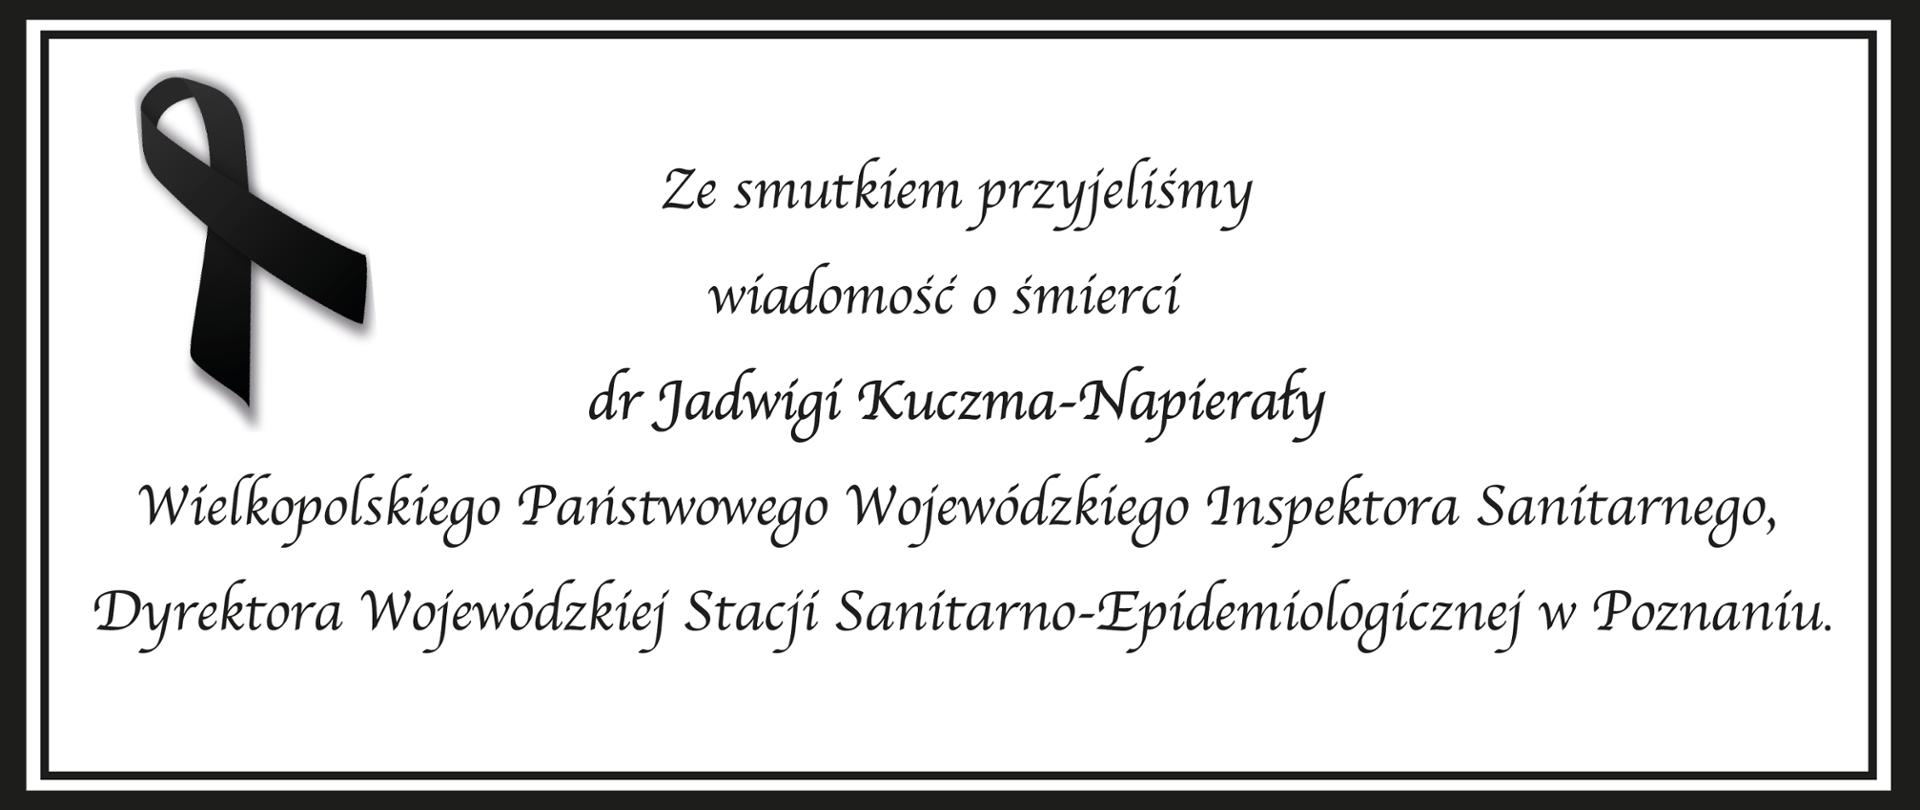 Ze smutkiem przyjęliśmy wiadomość o śmierci dr Jadwigi Kuczma-Napierały Wielkopolskiego Państwowego Wojewódzkiego Inspektora Sanitarnego, Dyrektora Wojewódzkiej Stacji Sanitarno-Epidemiologicznej w Poznaniu